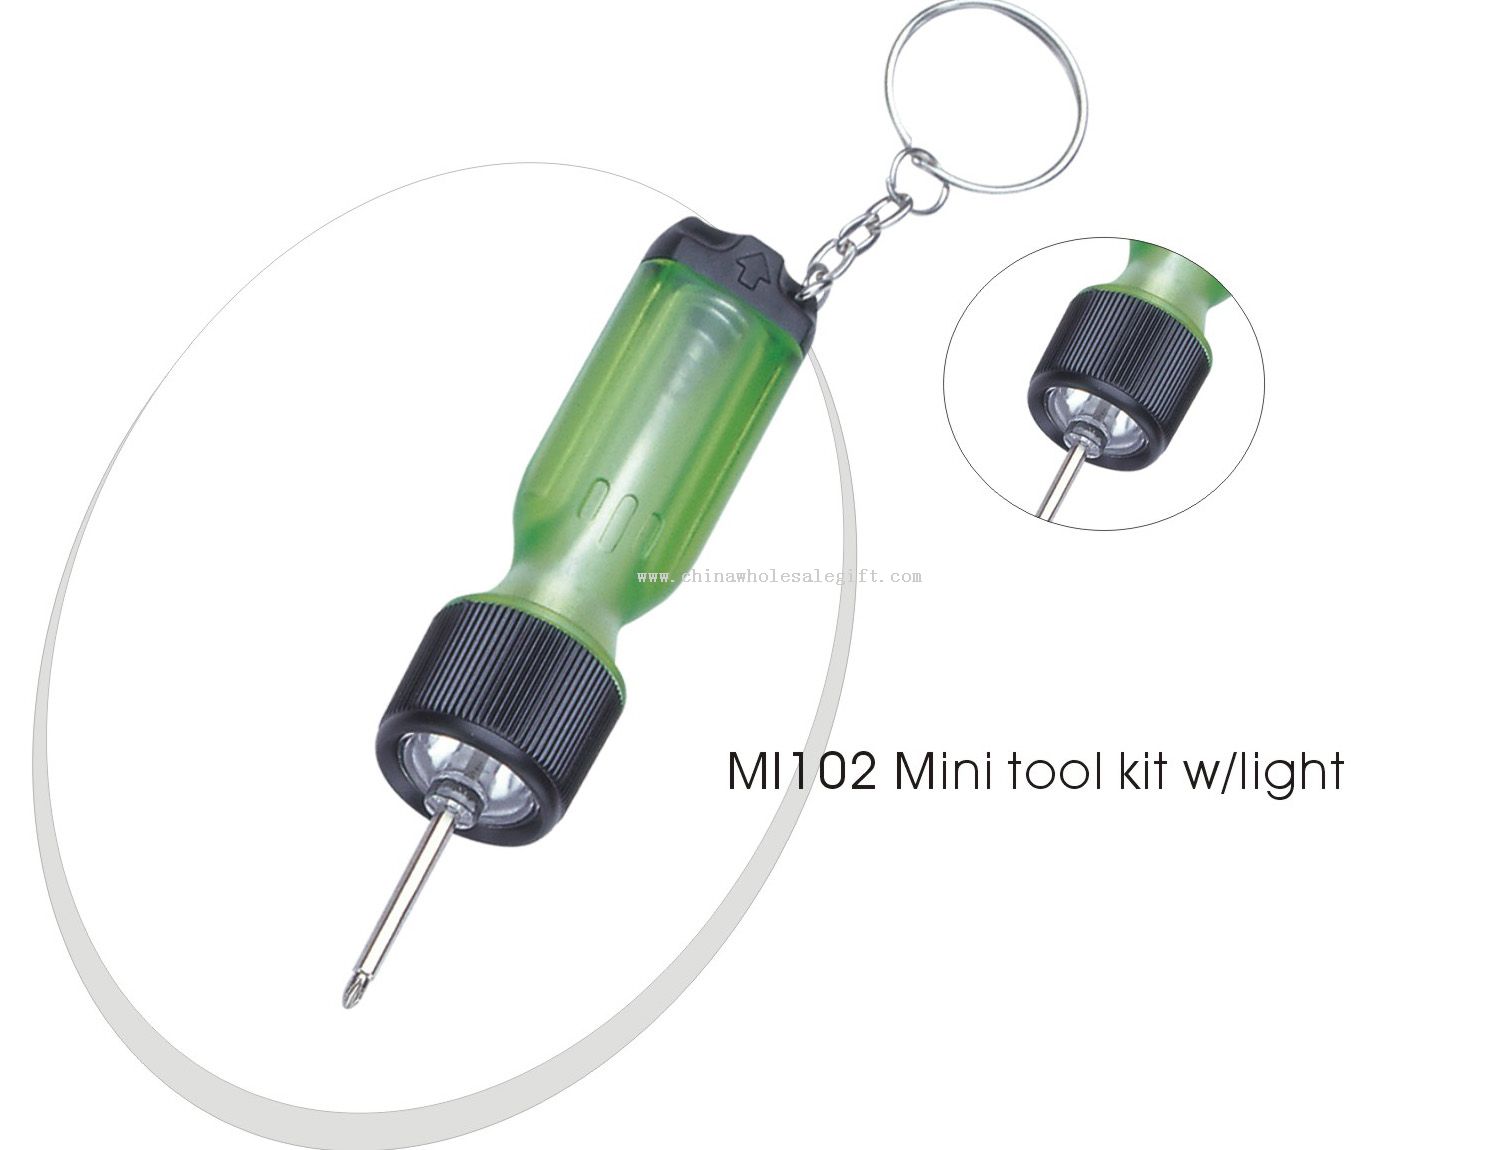 Mini tool kit